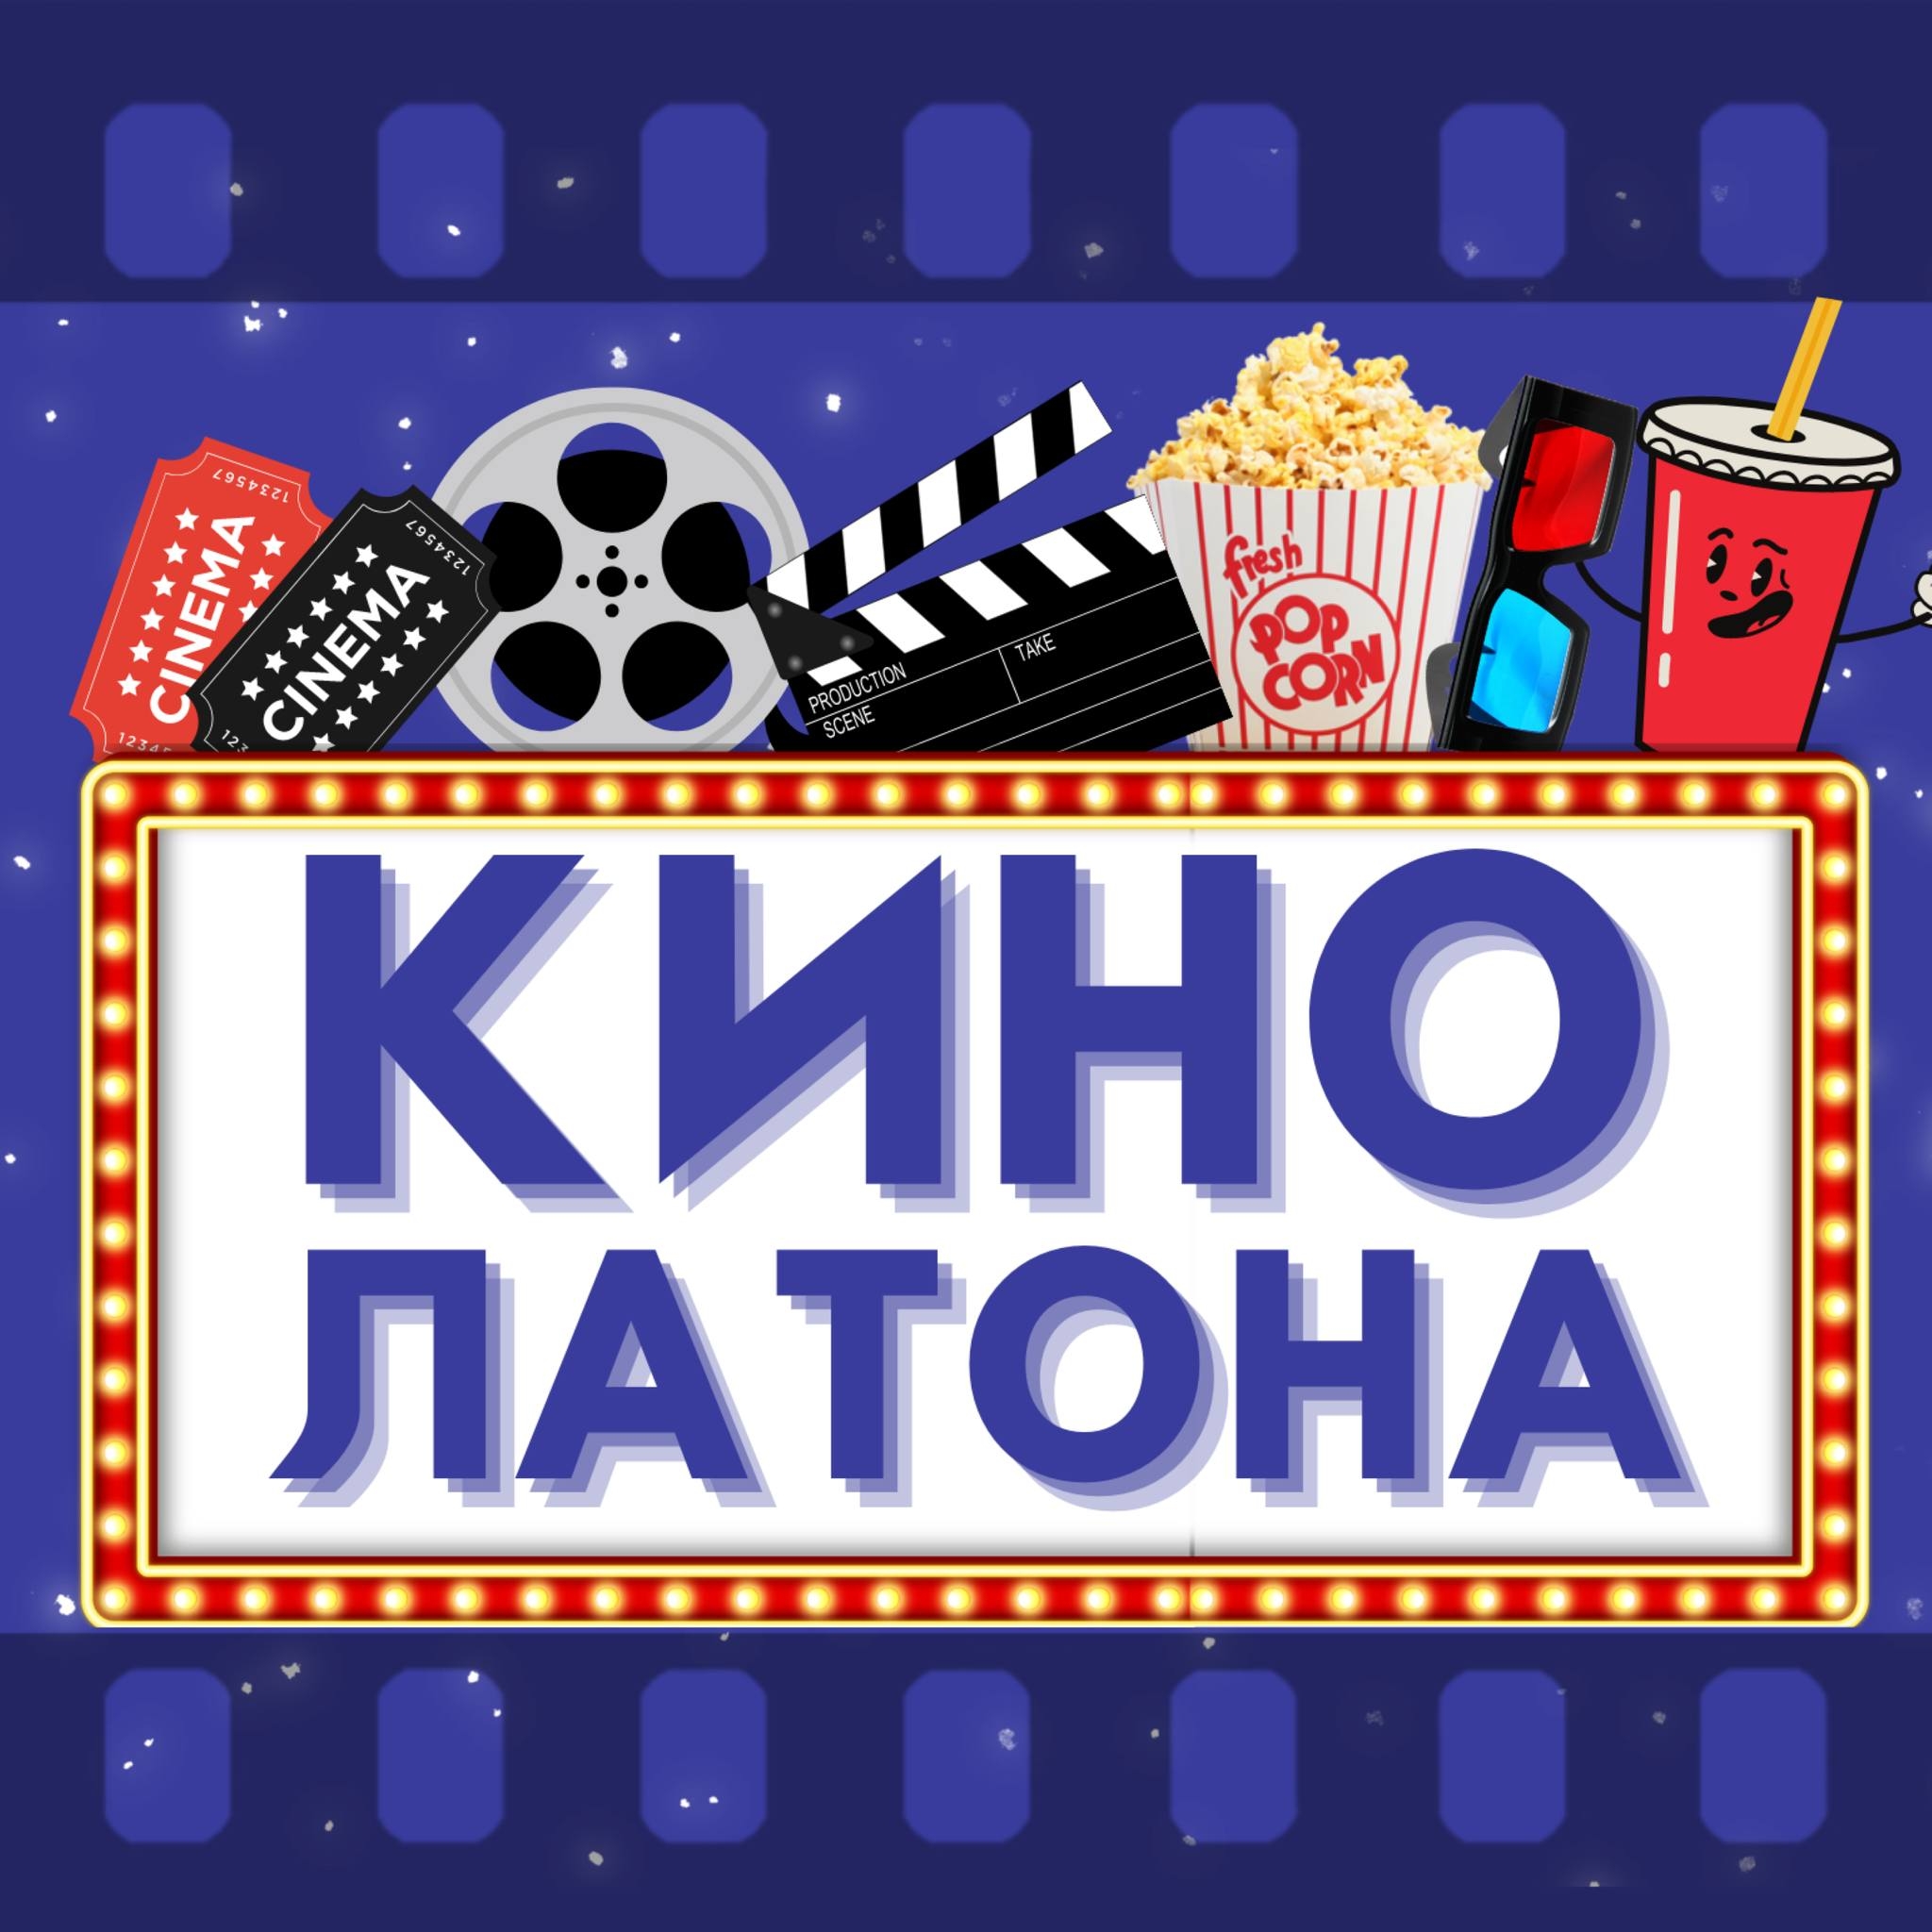 Latona Cinema :      02 - 08  2023